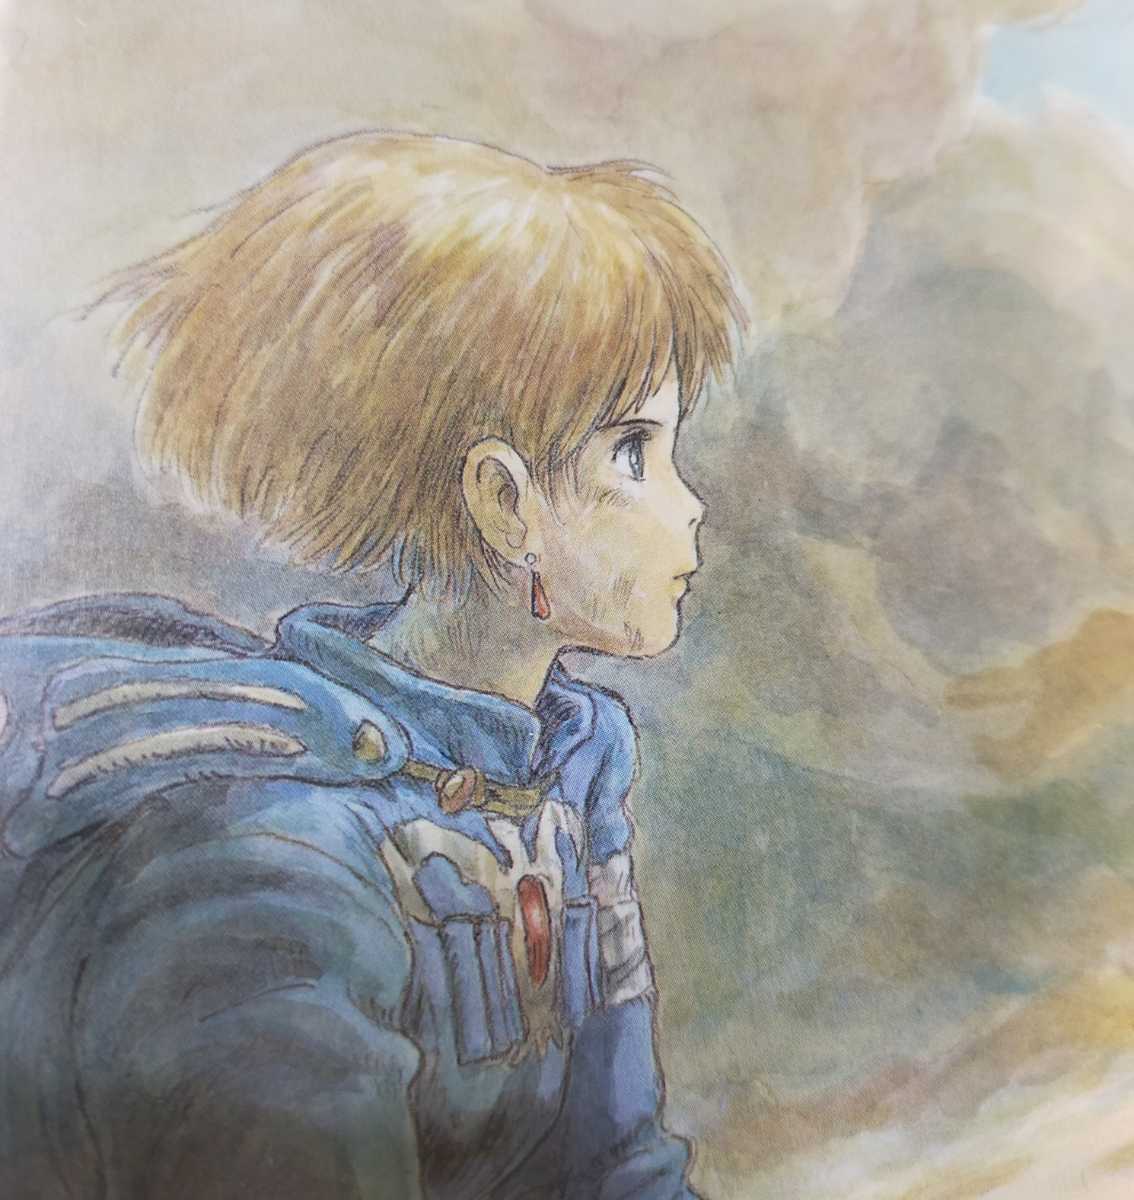 [ рамка товар ] Studio Ghibli Kaze no Tani no Naushika Ghibli официальный альбом с иллюстрациями порез .. Animage акварельная живопись Miyazaki . осмотр ) Ghibli постер. открытка t